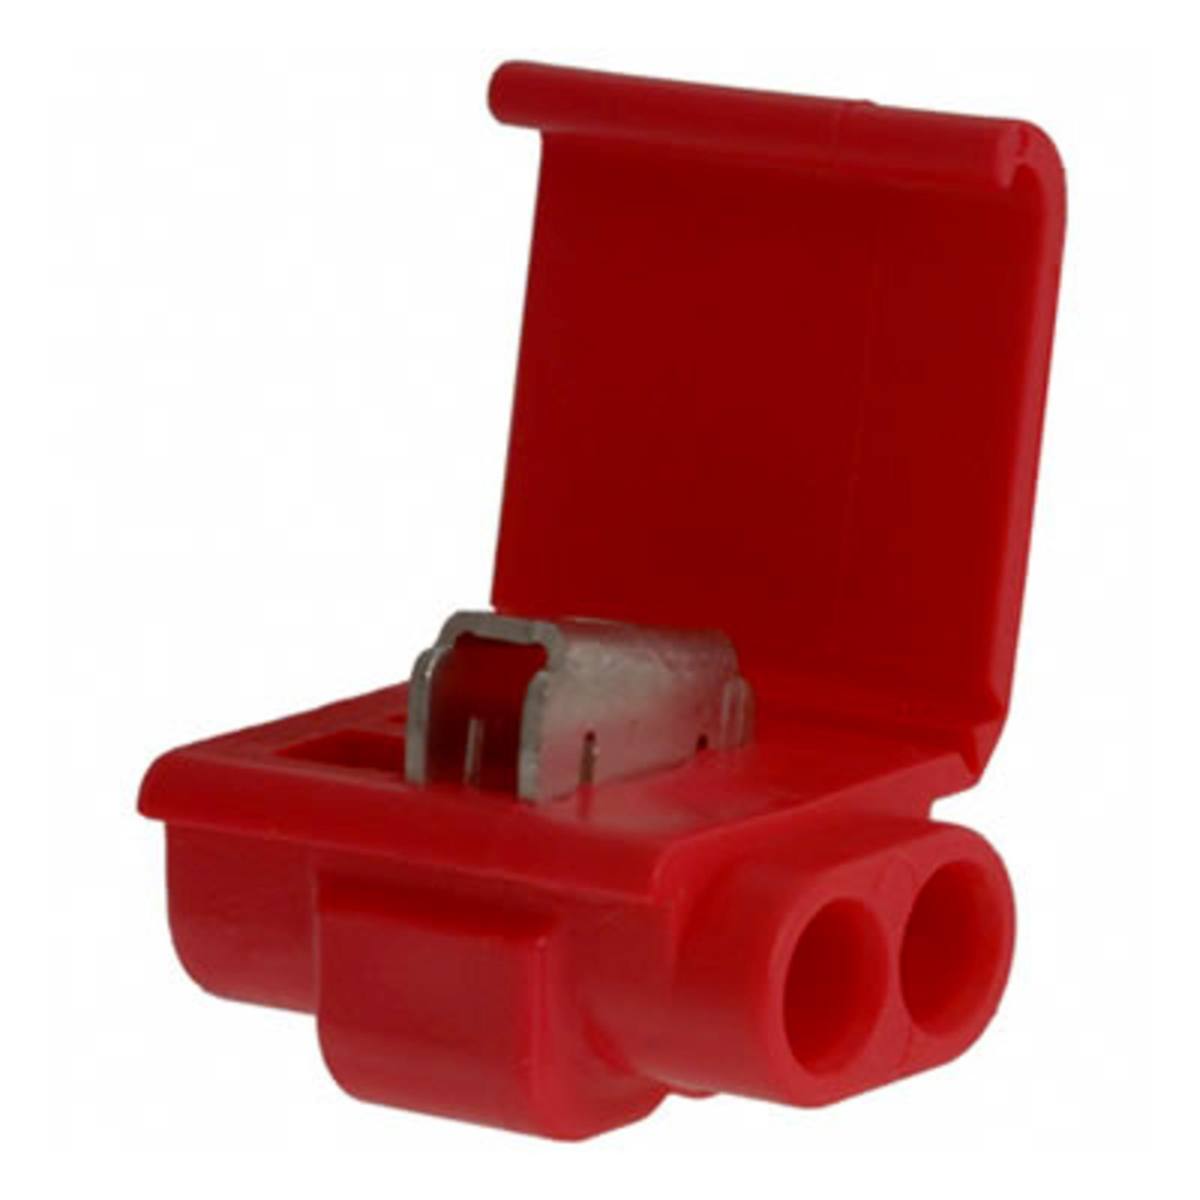  3M Scotchlok 557 Päätepistoke, punainen, 600 V, max. 0,5 - 1,5 mm², 100 kpl / pakkaus